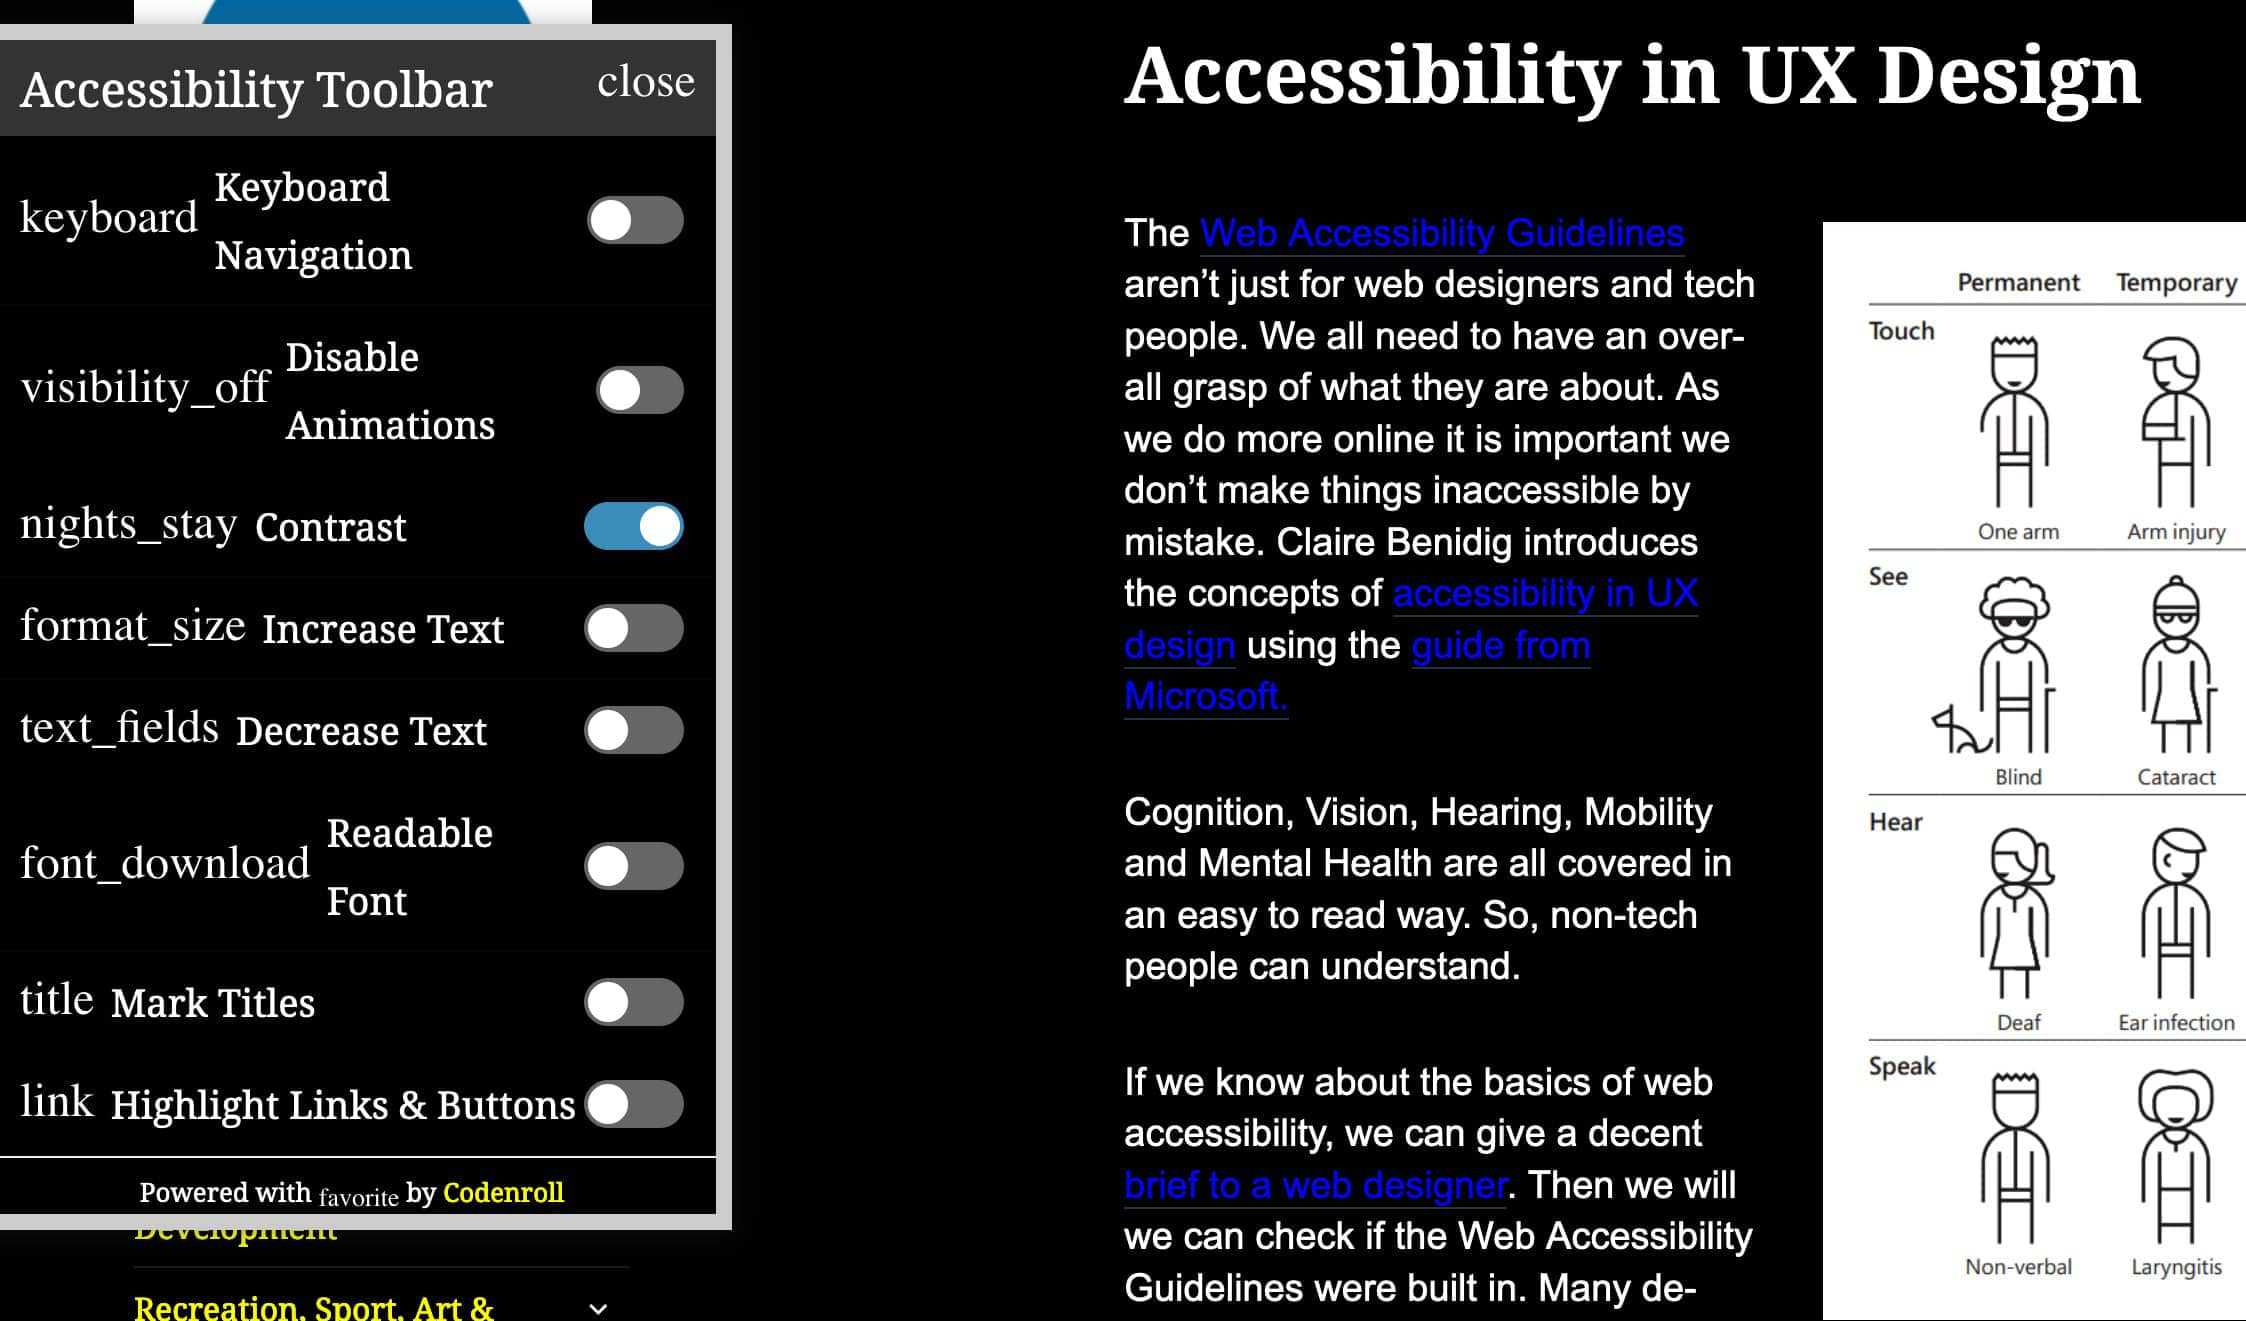 Certains navigateur ont une “web accessibility toolbar” qui permets de vérifier l’accessibilité du contenu des pages.